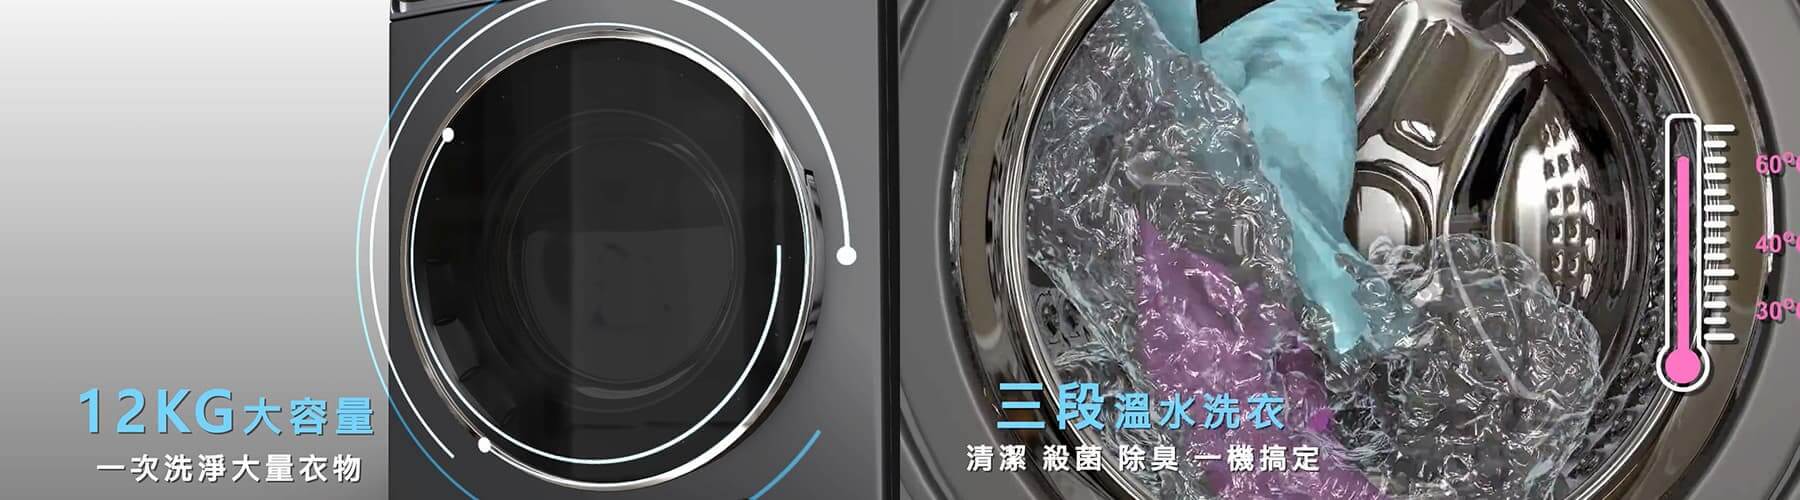 HERAN蒸氣洗滾筒式洗衣機產品介紹3D動畫影片-3